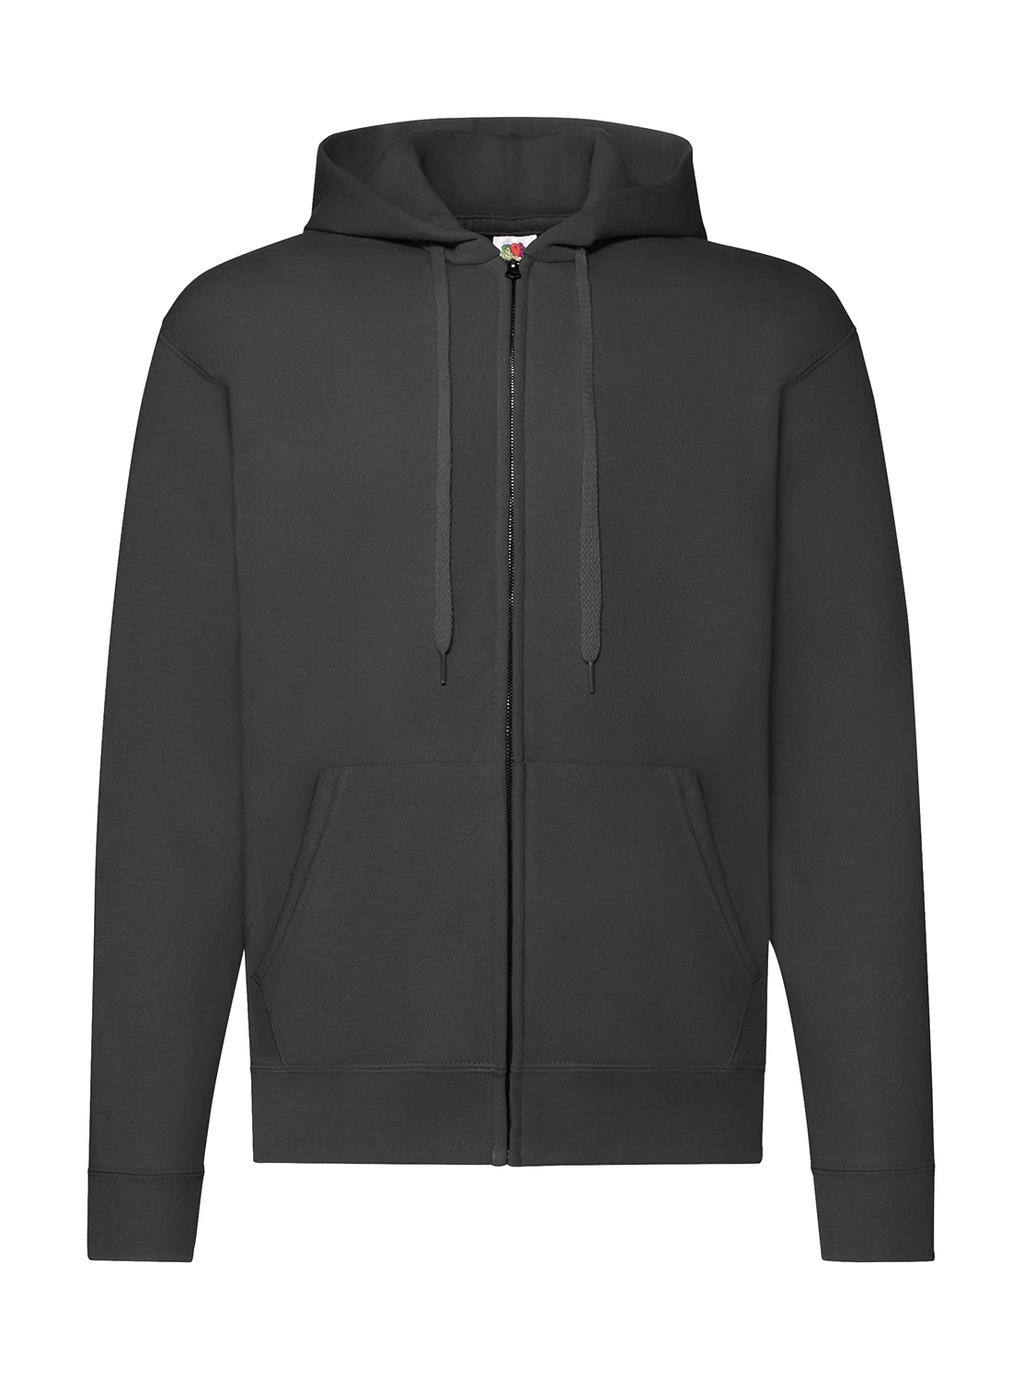 Classic Hooded Sweat Jacket zum Besticken und Bedrucken in der Farbe Light Graphite mit Ihren Logo, Schriftzug oder Motiv.